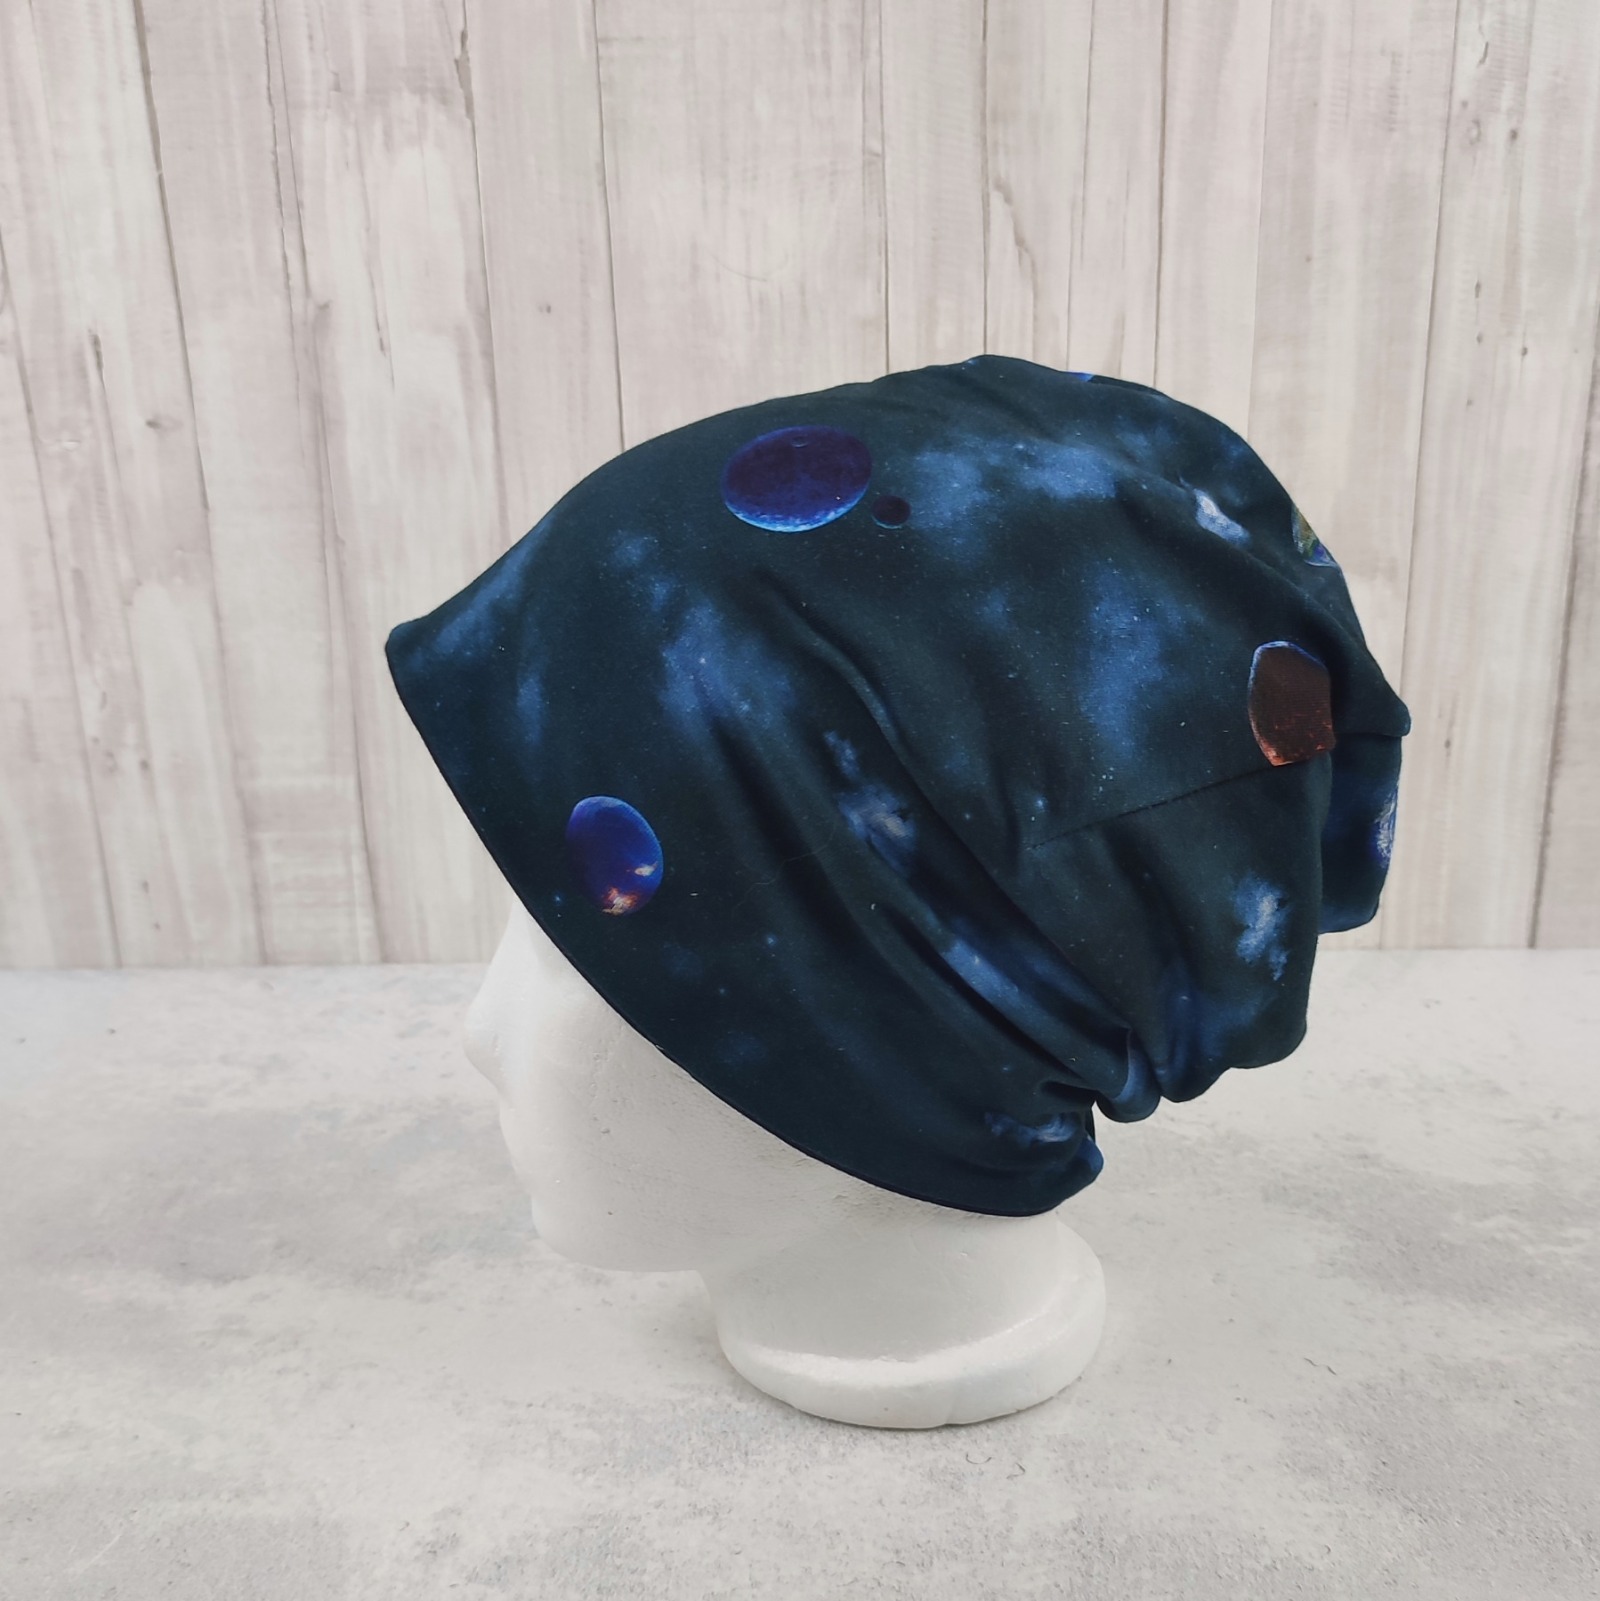 Beanie Weltall, coole Mütze mit Planeten auf dunkelblau, Größe ca. 48 bis 54 cm Kopfumfang